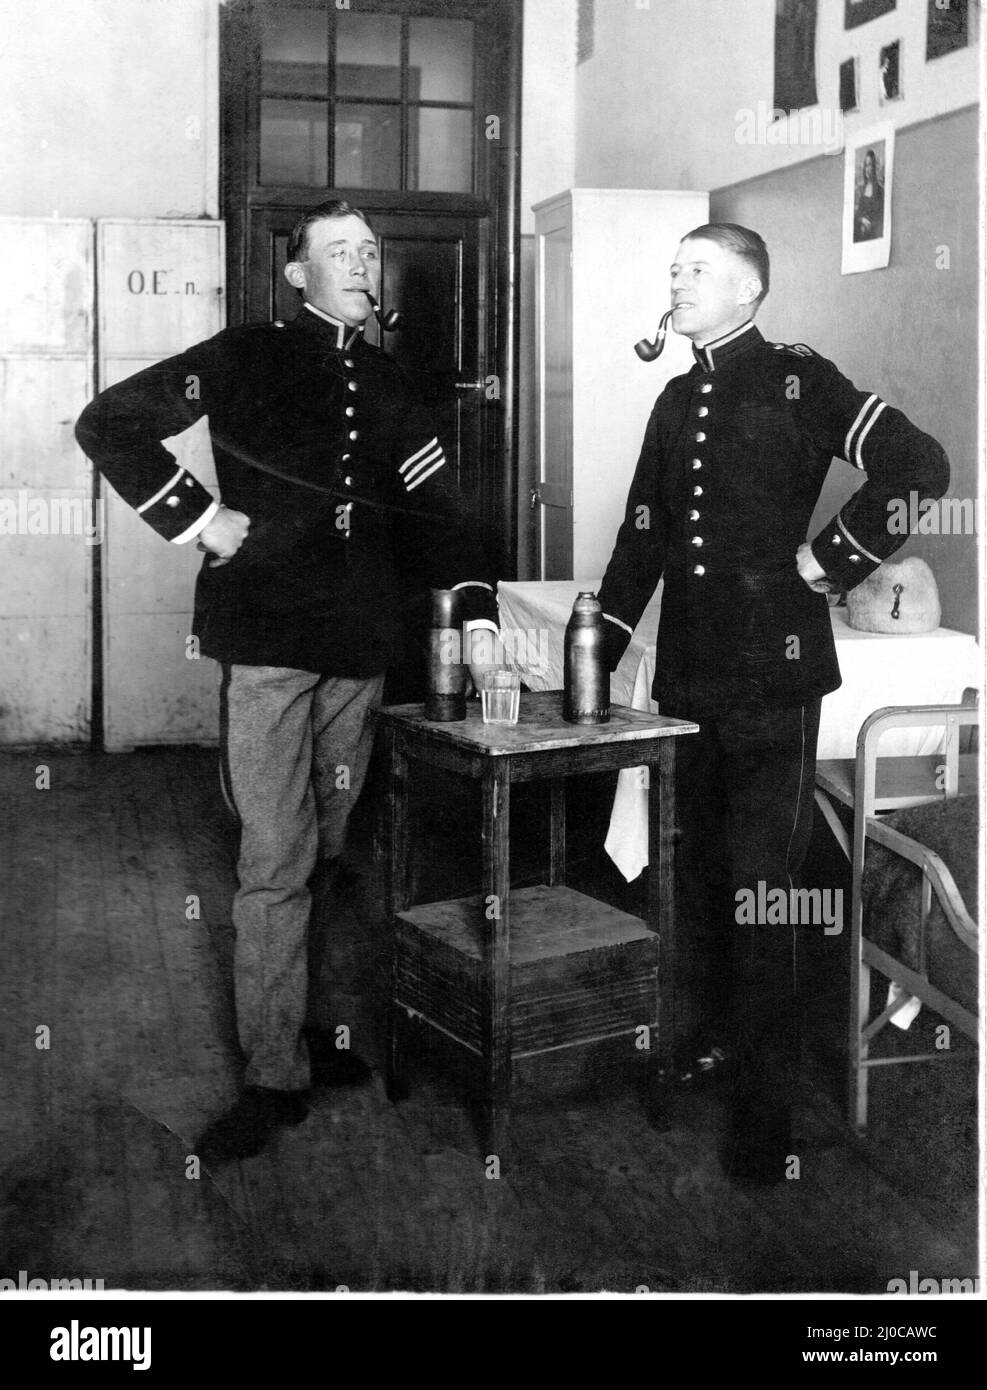 Auténtica fotografía vintage de dos soldados manos en las caderas de fumar pipas, de pie junto a los matraces de beber en la mesa, Suecia. Concepto de unión Foto de stock